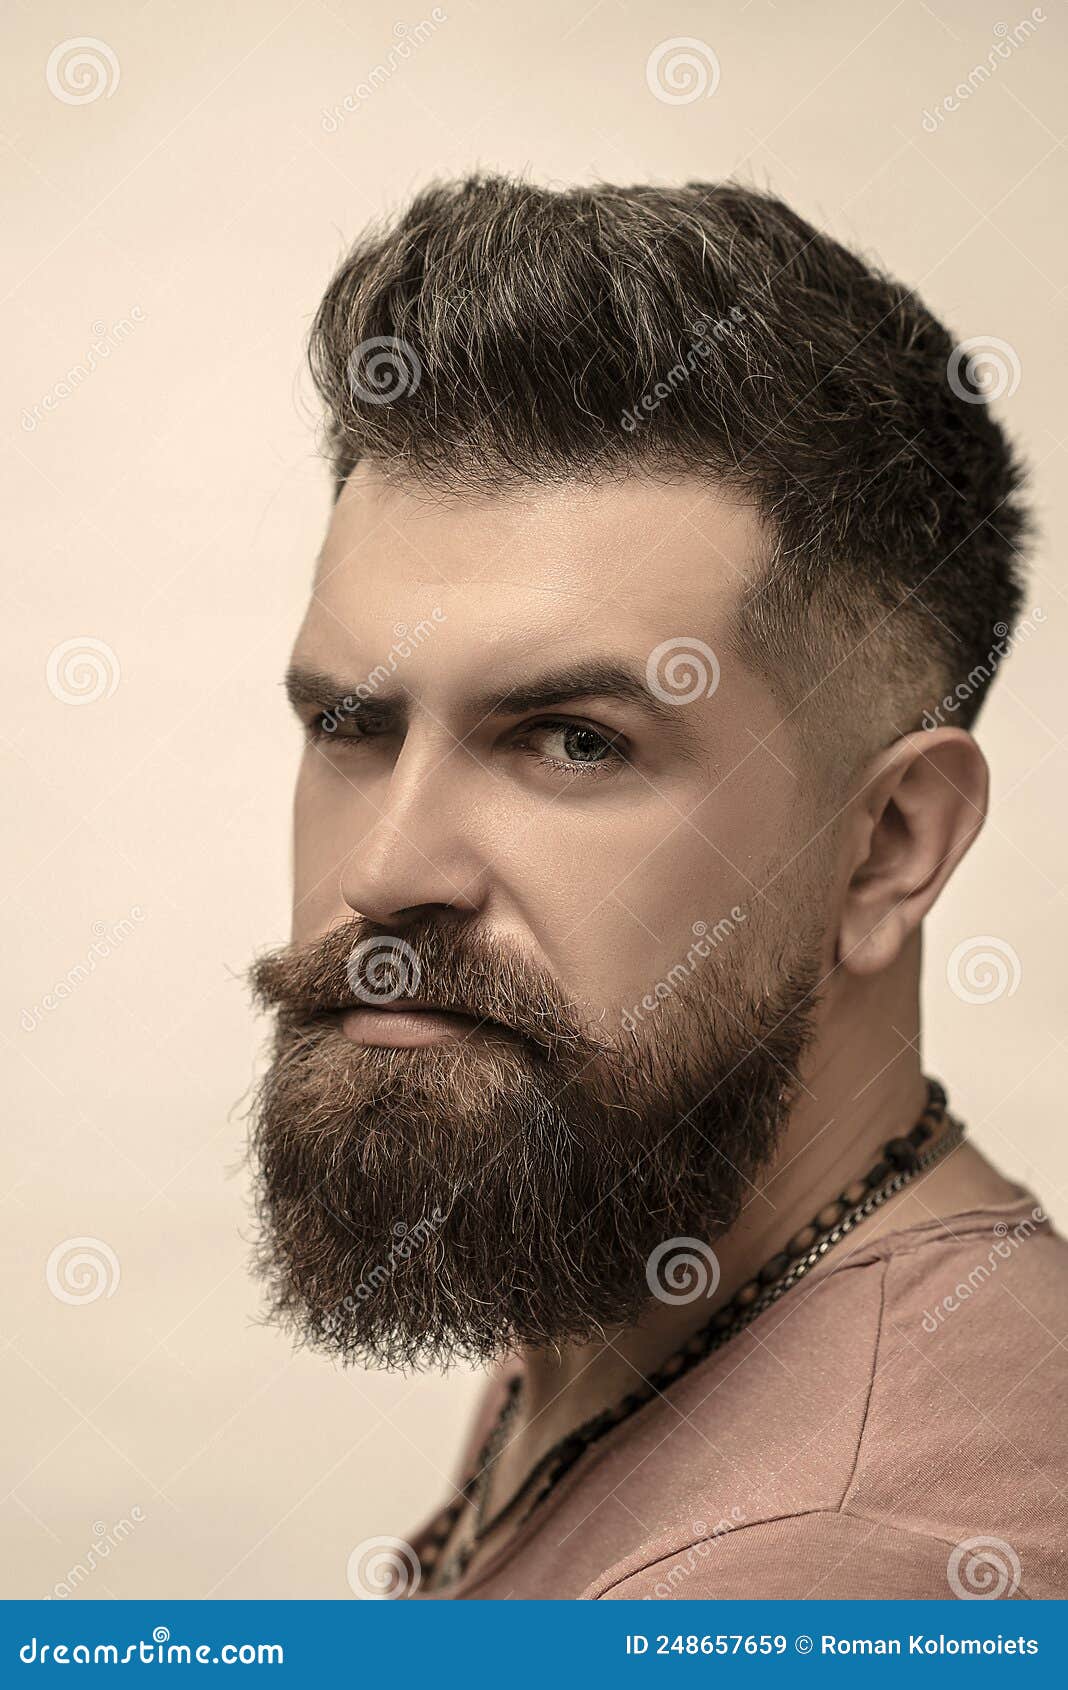 Peluquero tatuado recortando al hombre barbudo con máquina de afeitar en la  barbería proceso de peinado primer plano de un peluquero cortando la barba  de un hombre barbudo